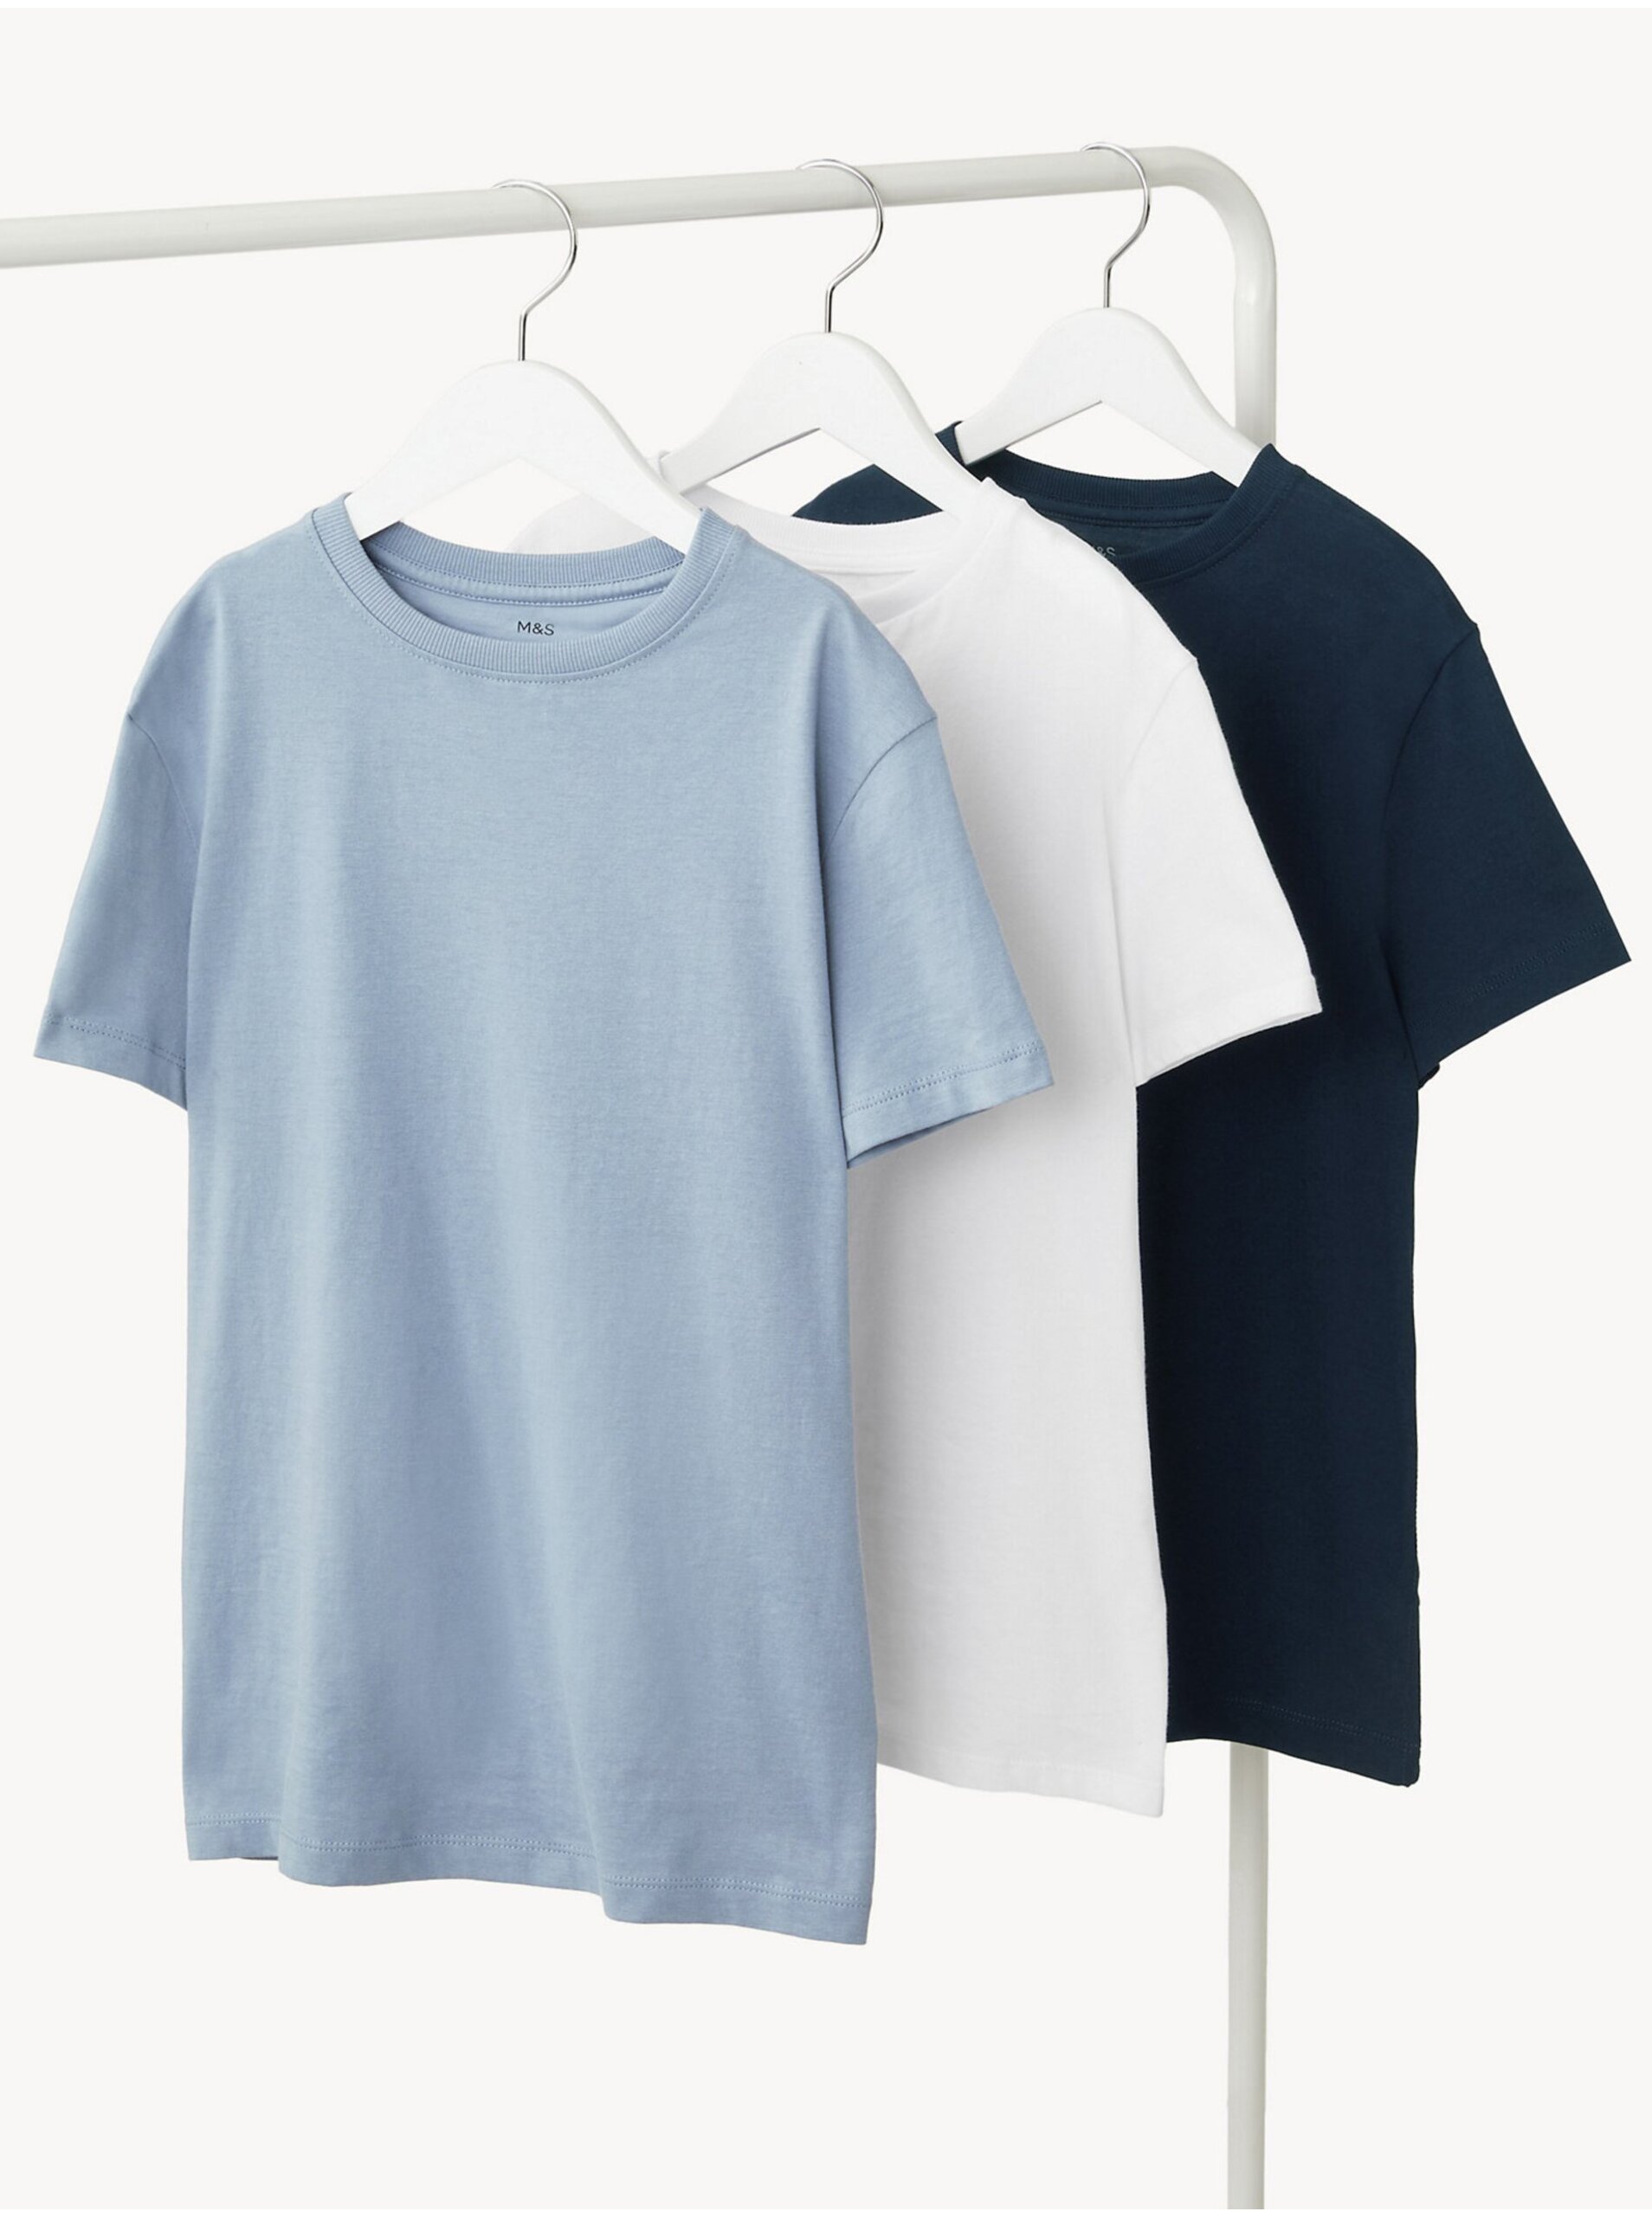 Levně Sada tří klučičích basic triček ve světle modré, bílé a tmavě modré barvě Marks & Spencer